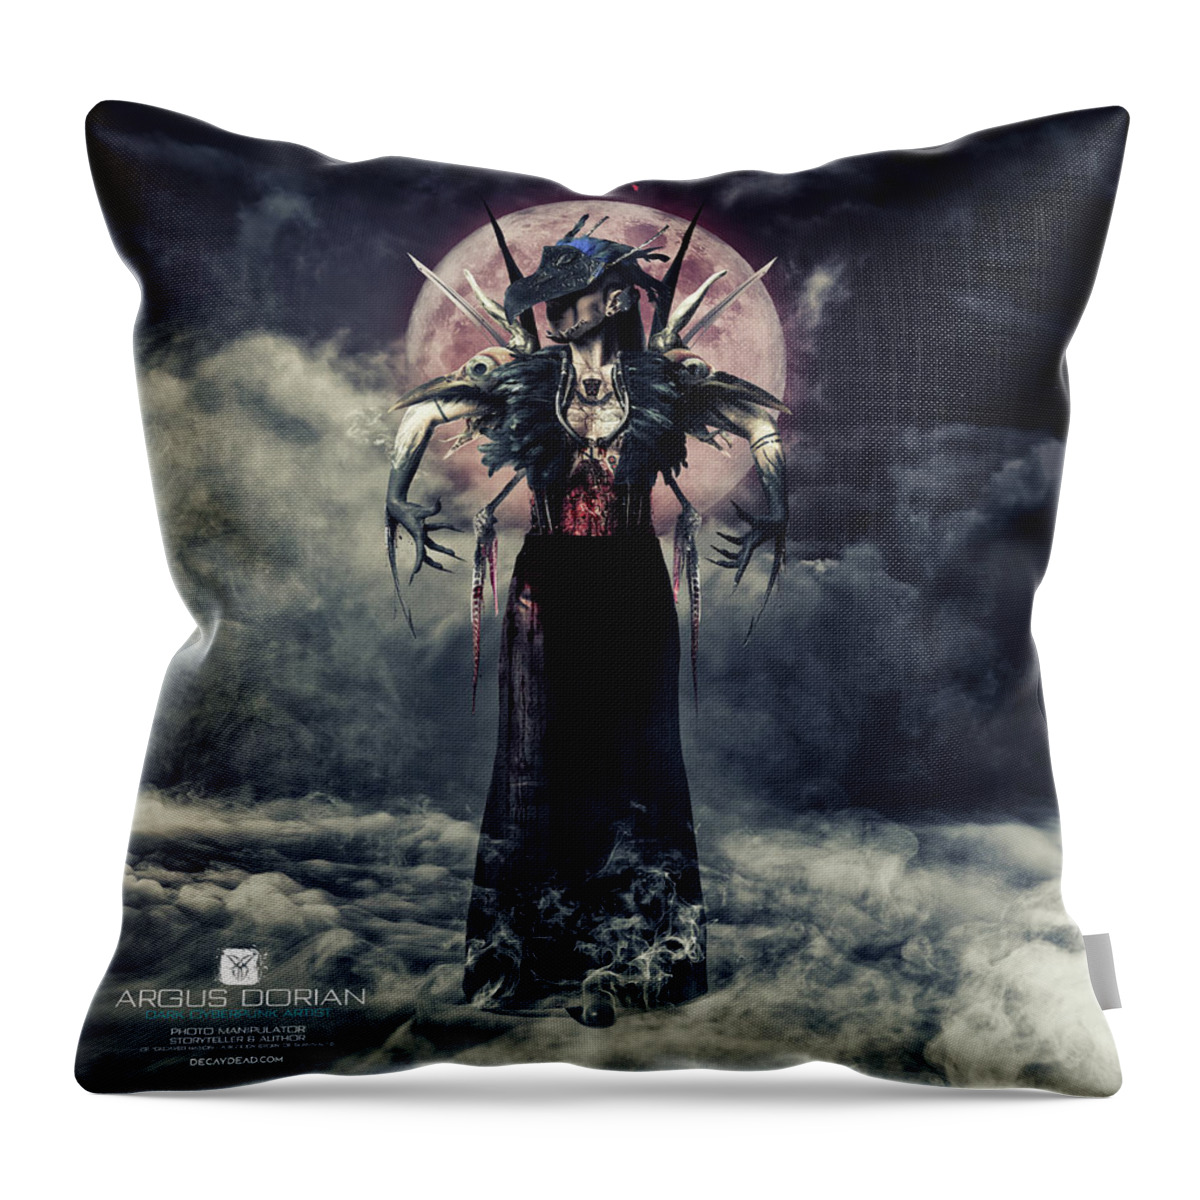 Dark Art Throw Pillow featuring the digital art Dark Raven by Argus Dorian by Argus Dorian